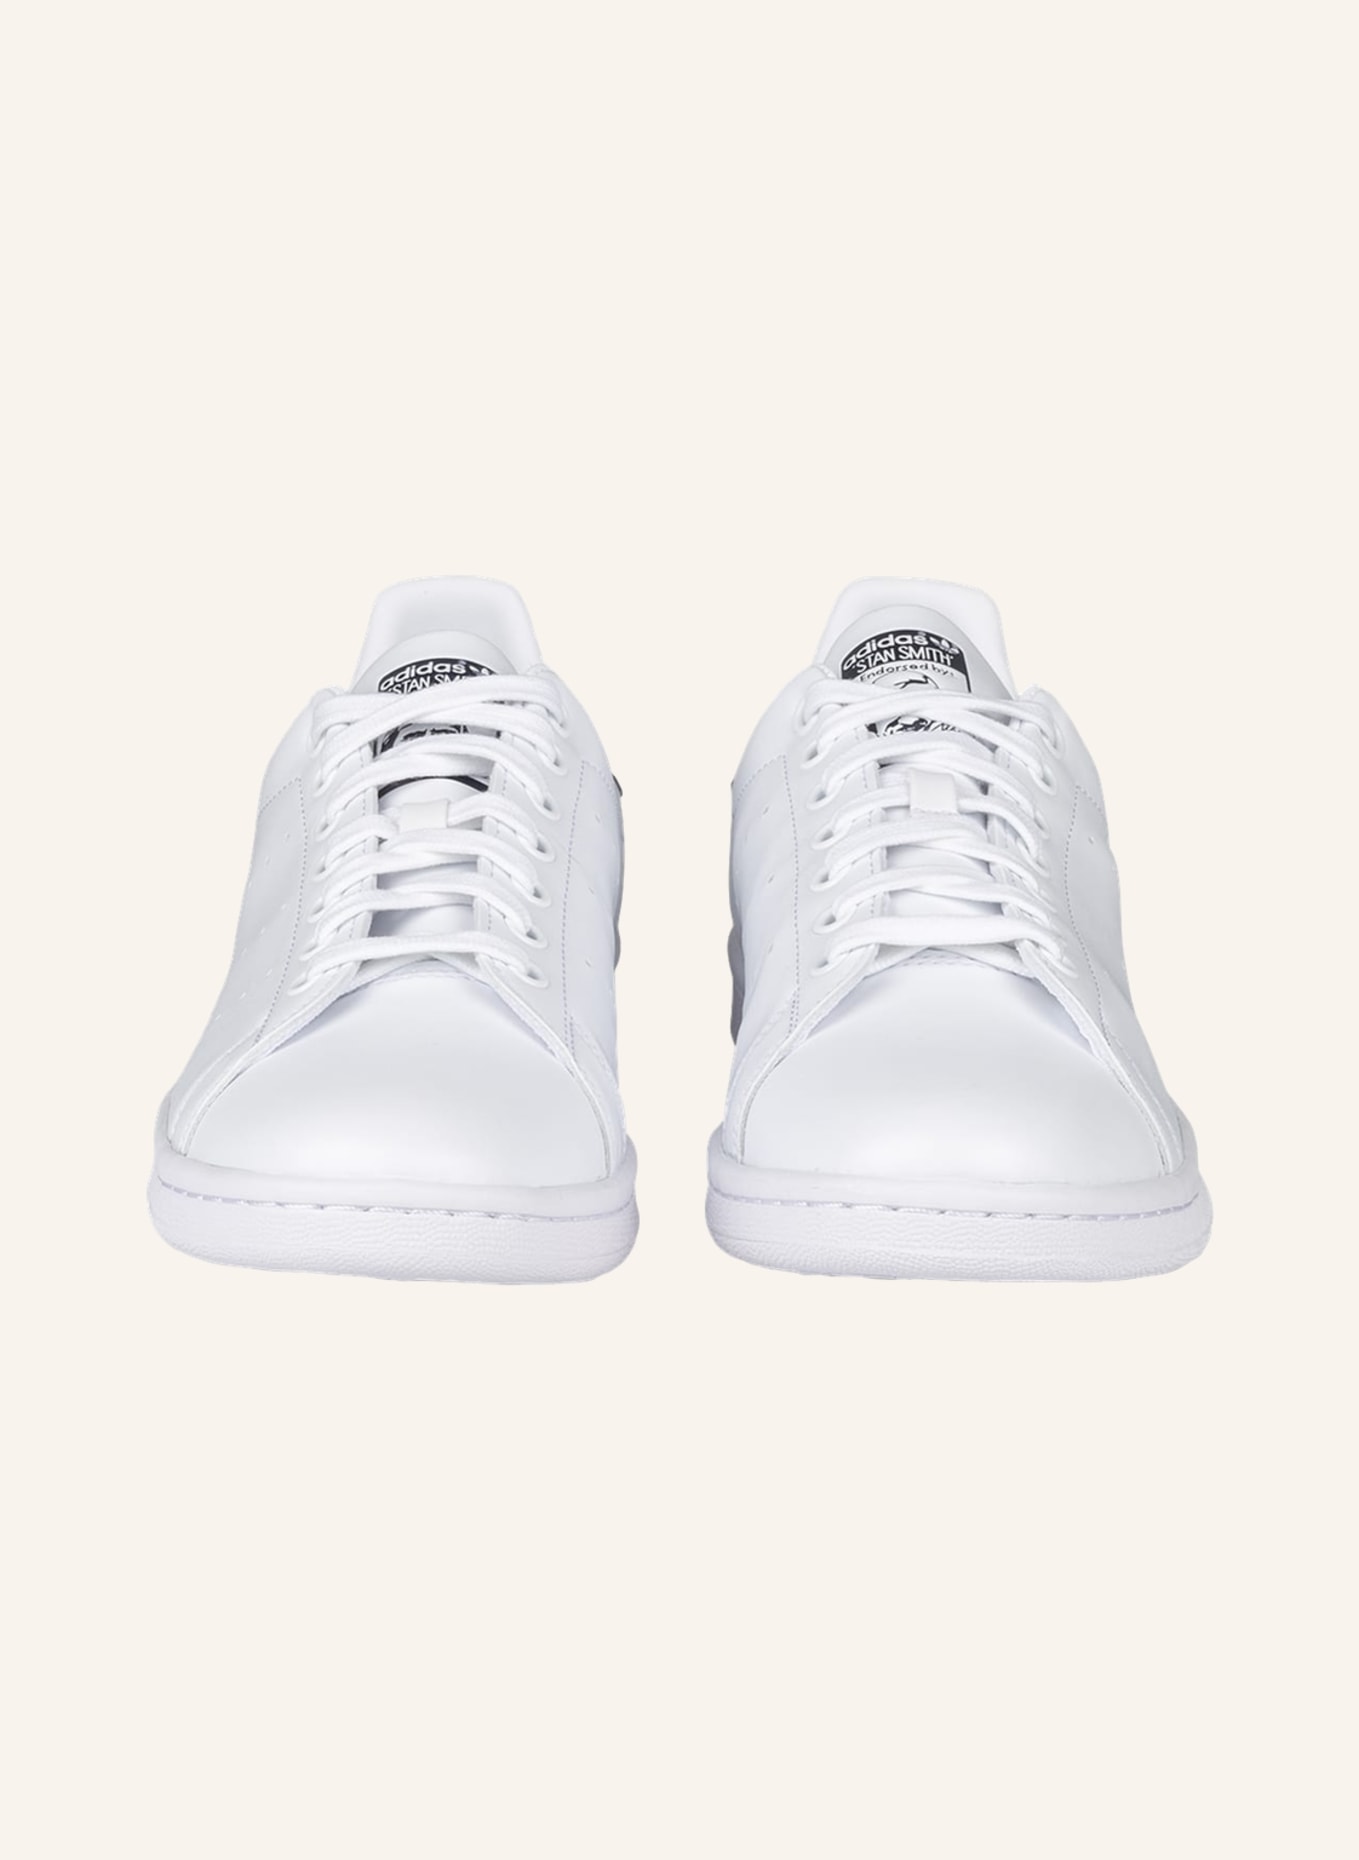 dunkelblau Sneaker STAN SMITH in adidas Originals weiss/